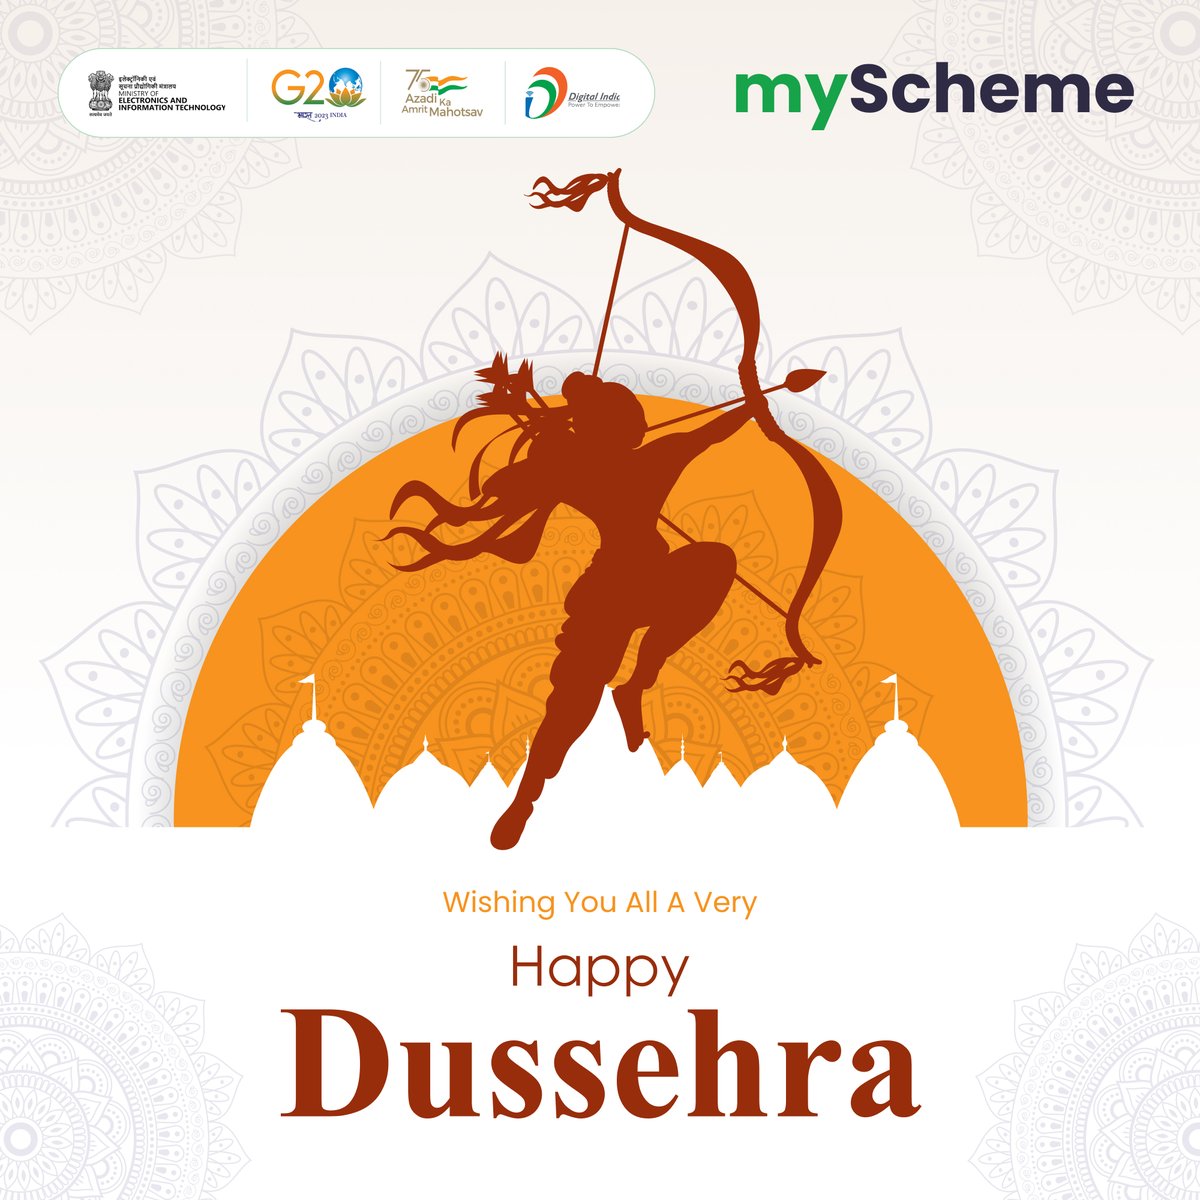 #myScheme wishes You All A Very Happy Dussehra. myscheme.gov.in #HappyDussehra #DigitalIndia #schemesforyour #celebrateDussehraWithmyScheme